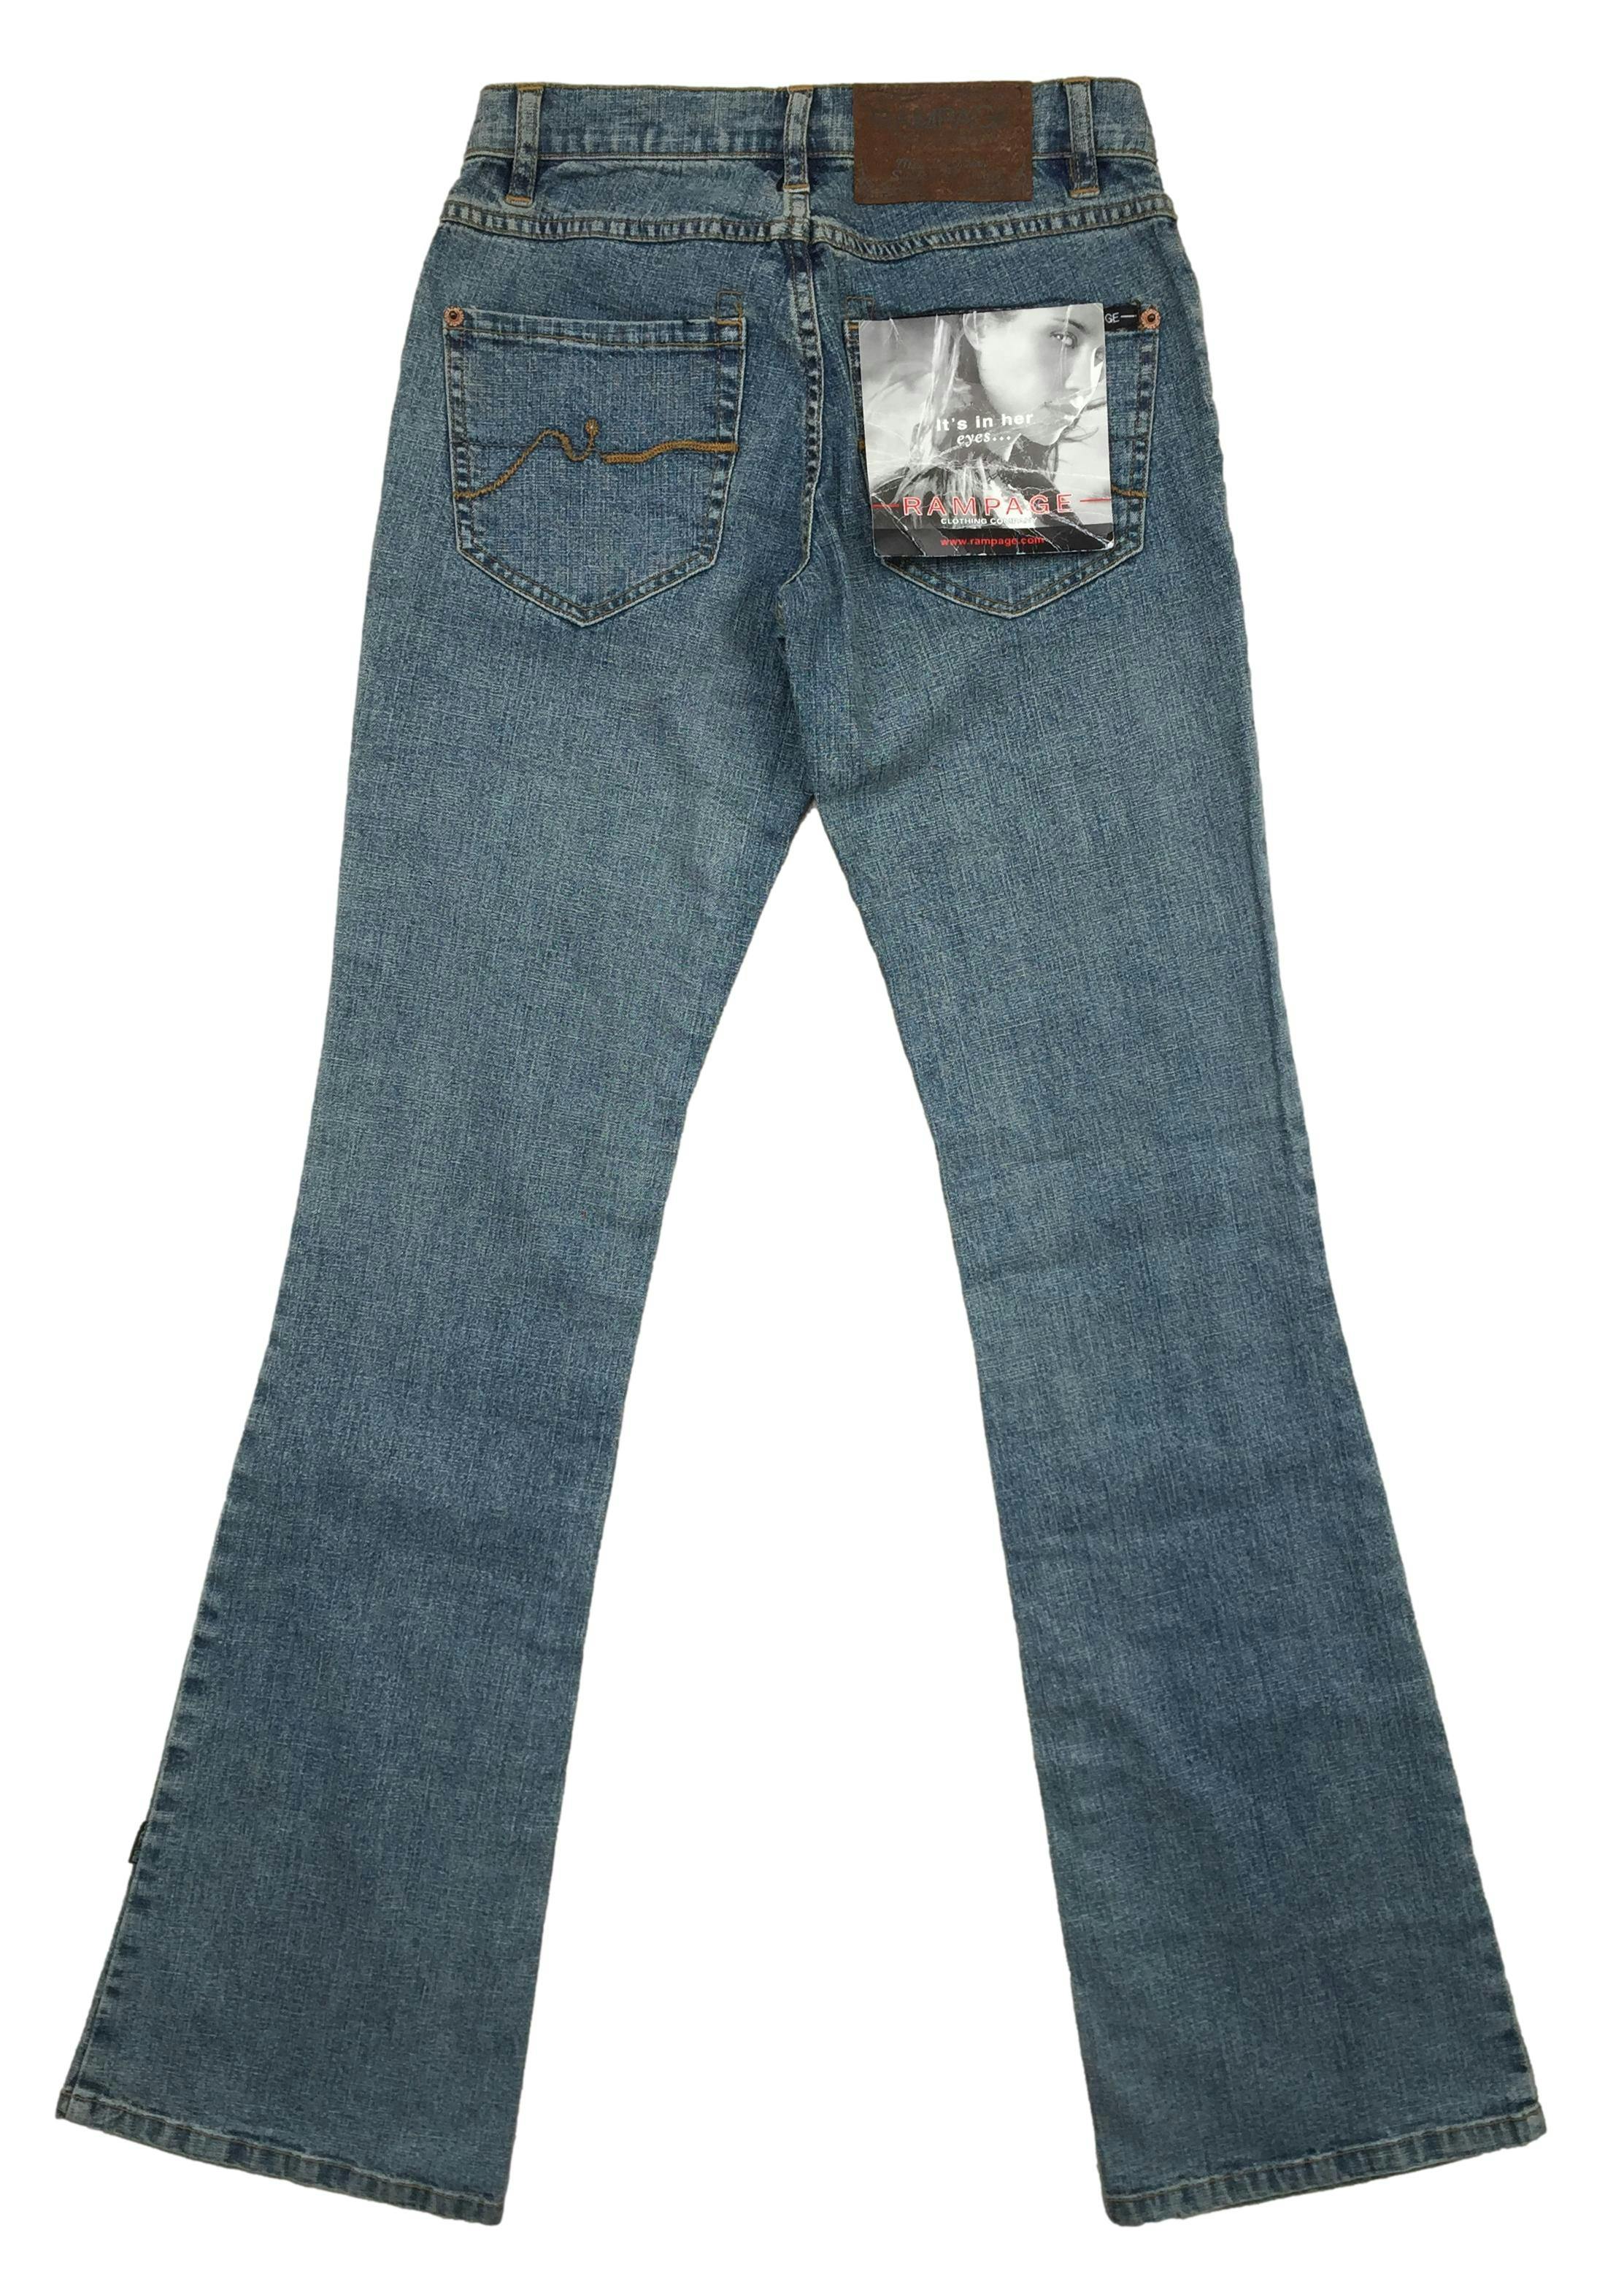 Pantalón jean, pierna ancha, botón y bolsillos delateros. Cintura: 62cm, Tiro: 18cm, Largo: 102cm. Nuevo con etiqueta.